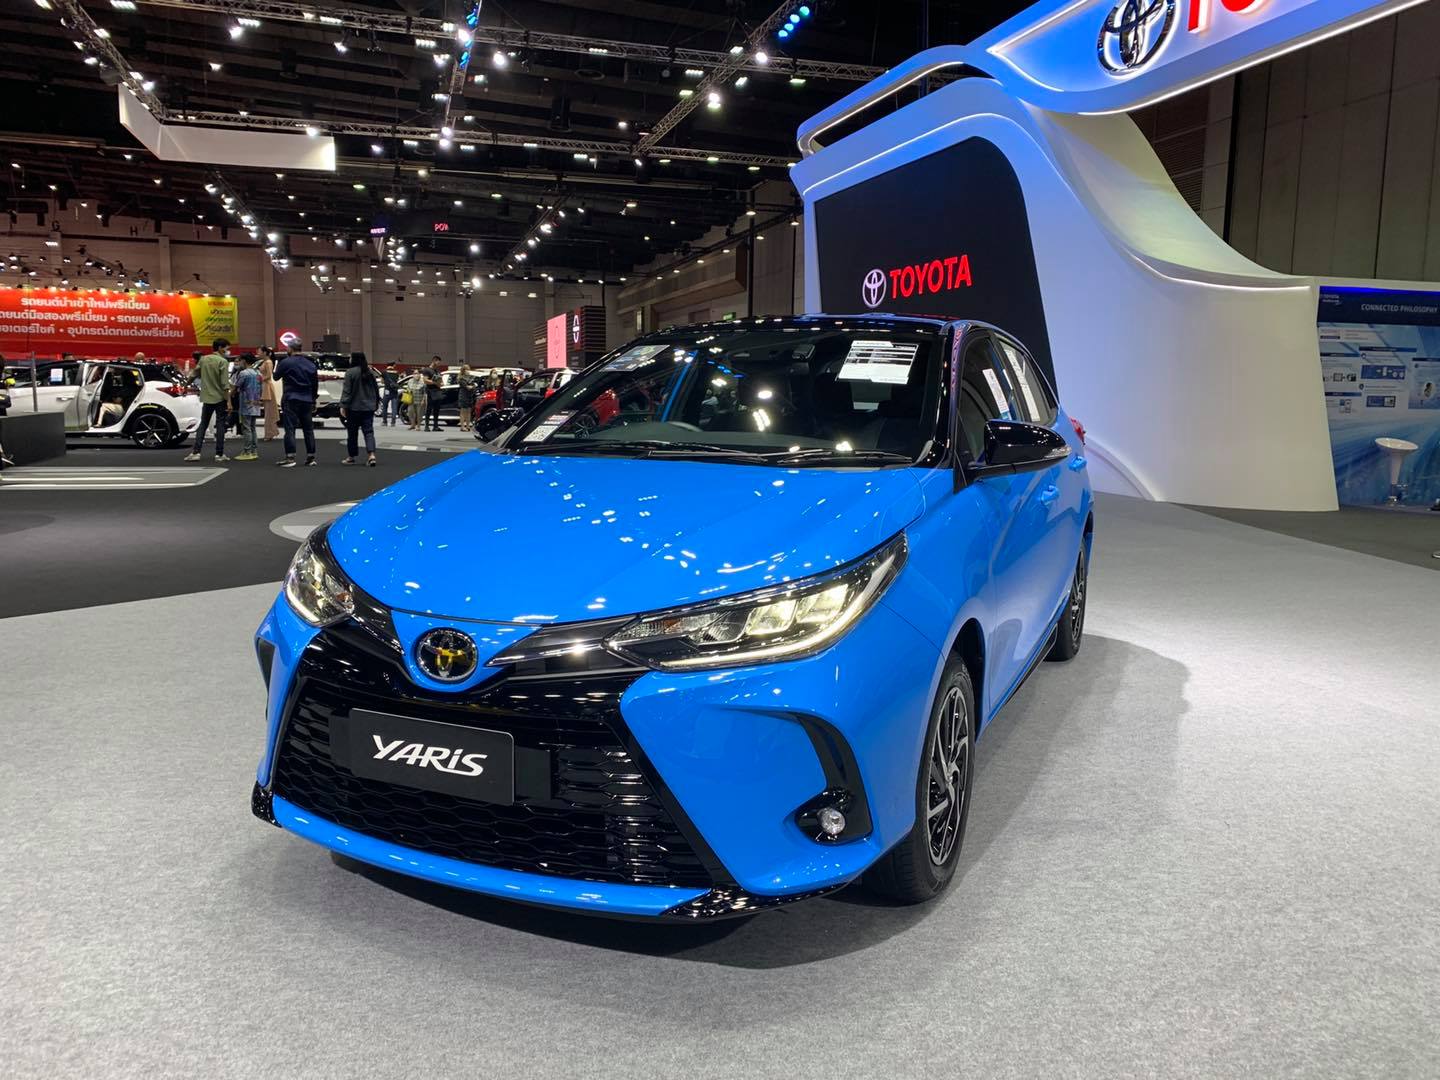 Đại lý bất ngờ nhận đặt cọc Toyota Yaris 2021: Đầu xe giống Camry, dự kiến tháng 10 về Việt Nam - Ảnh 1.